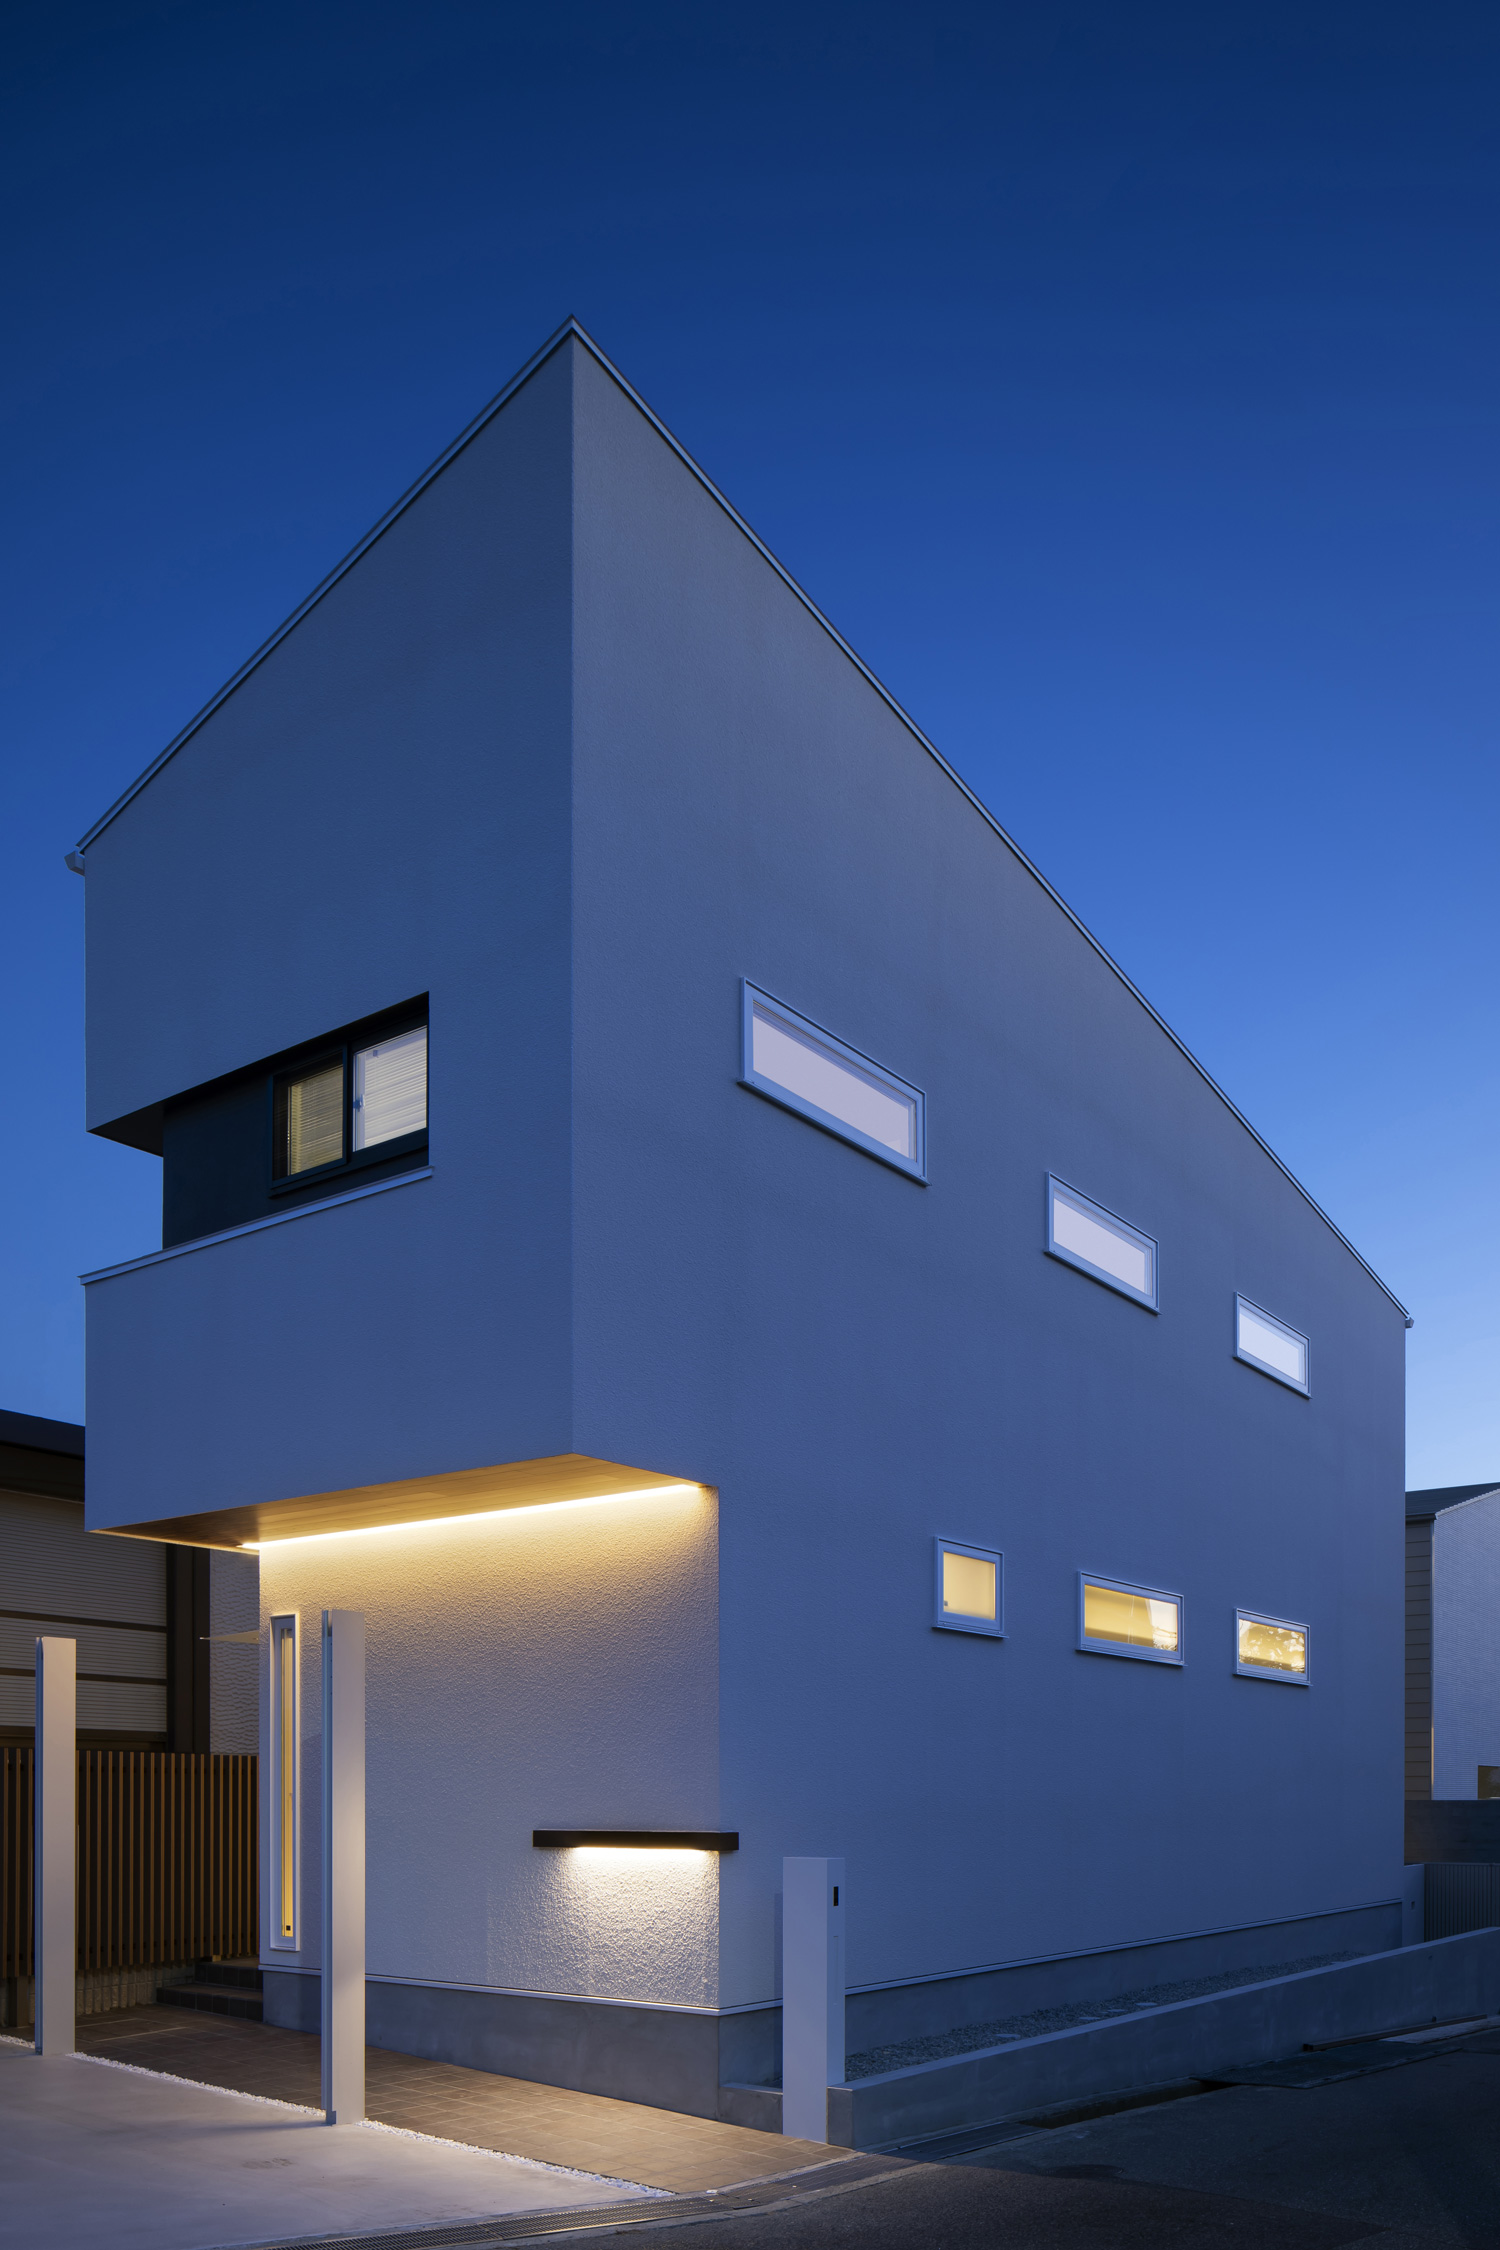 大きさや位置が均一な窓が並ぶ、間接照明が取り付けられた住宅の外観・デザイン住宅